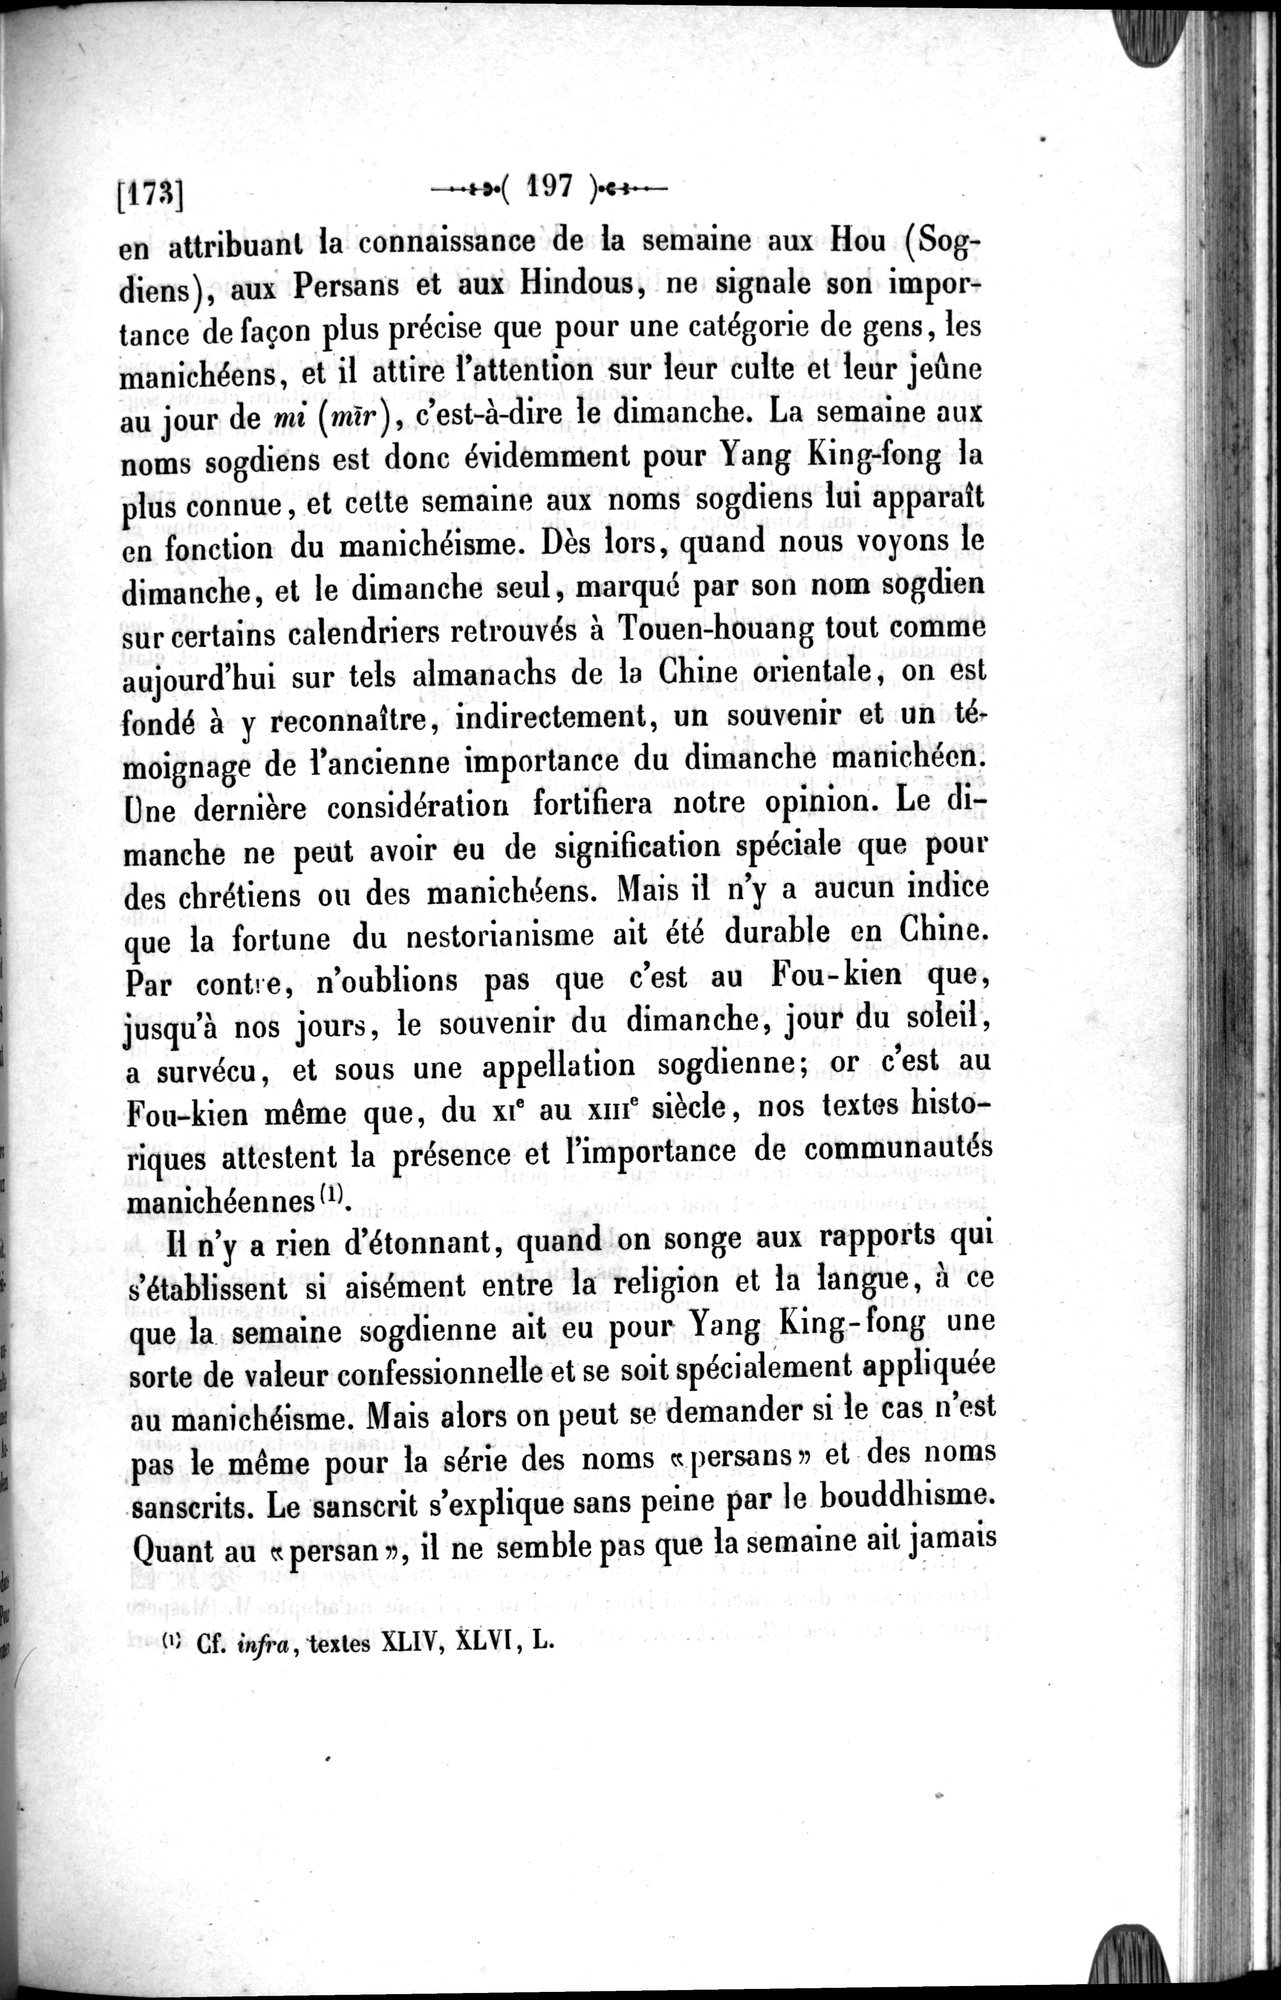 Un traité manichéen retrouvé en Chine : vol.1 / Page 207 (Grayscale High Resolution Image)